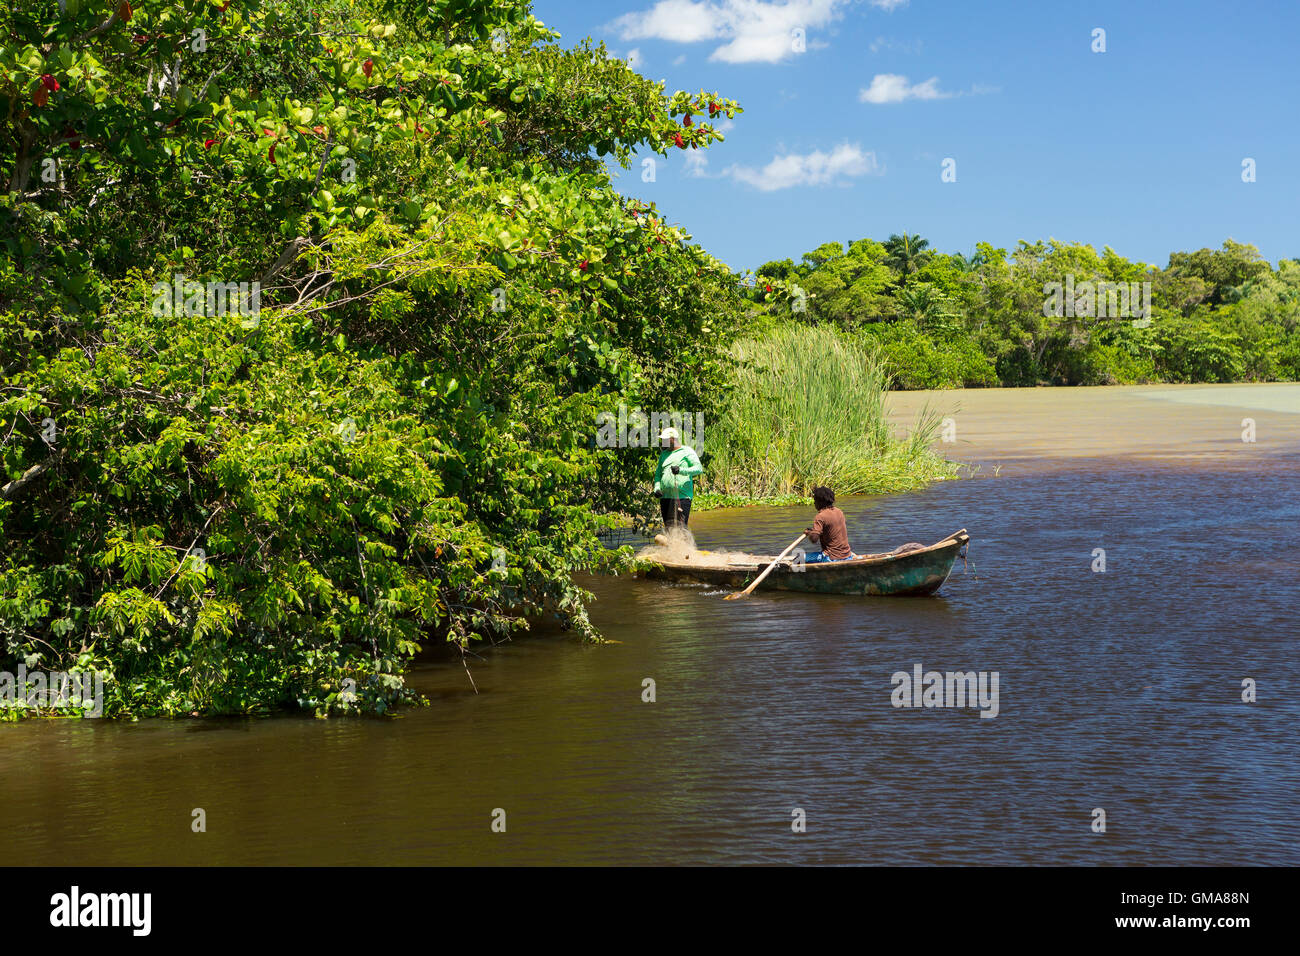 República Dominicana - Pescadores en lancha sobre el río Yasica Foto de stock